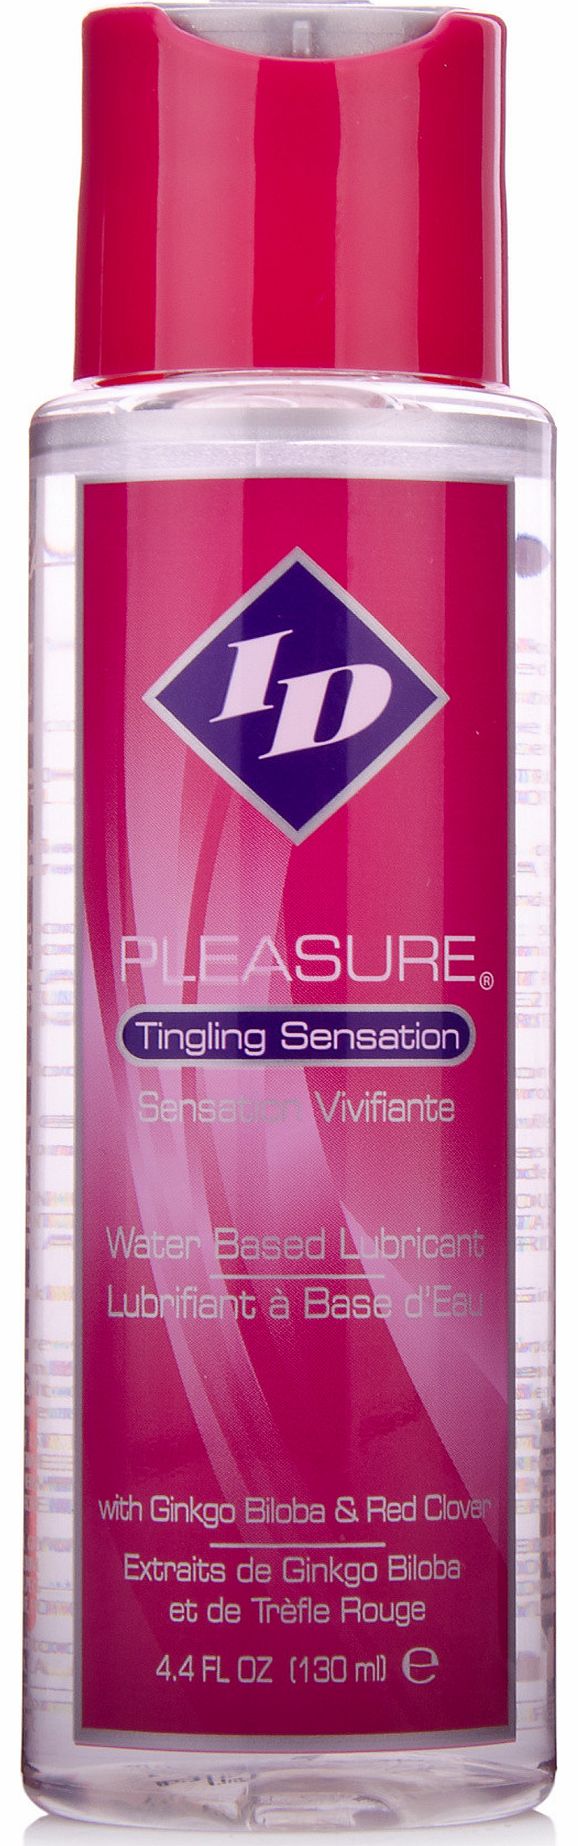 ID Pleasure Tingling Sensation Lubricant